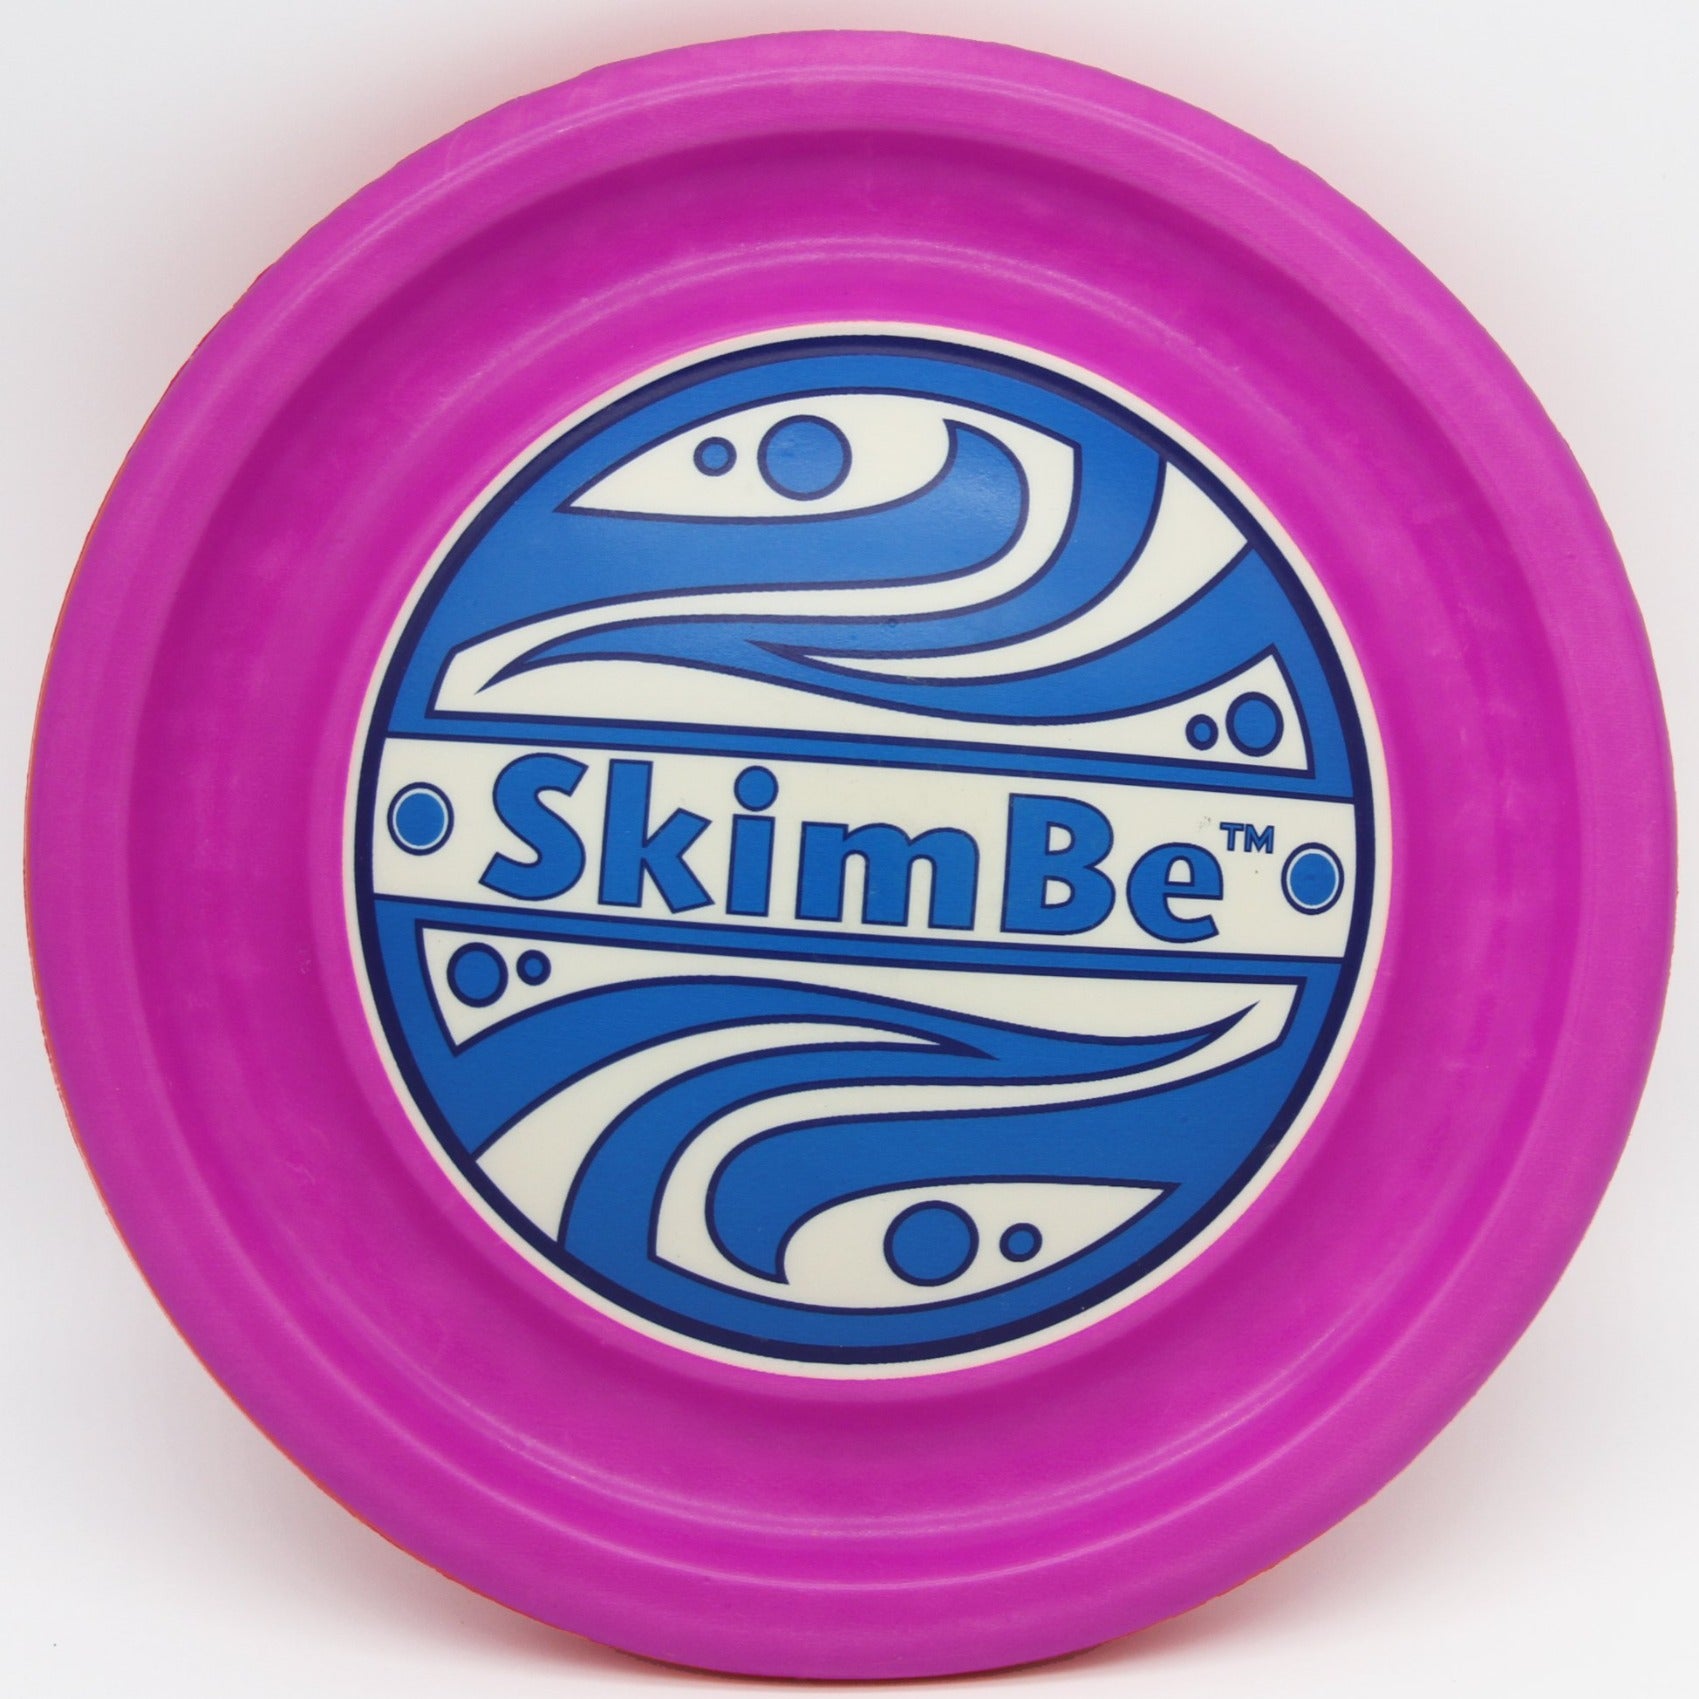  Skim 'N Score Ultimate Indoor Outdoor Toy - Water